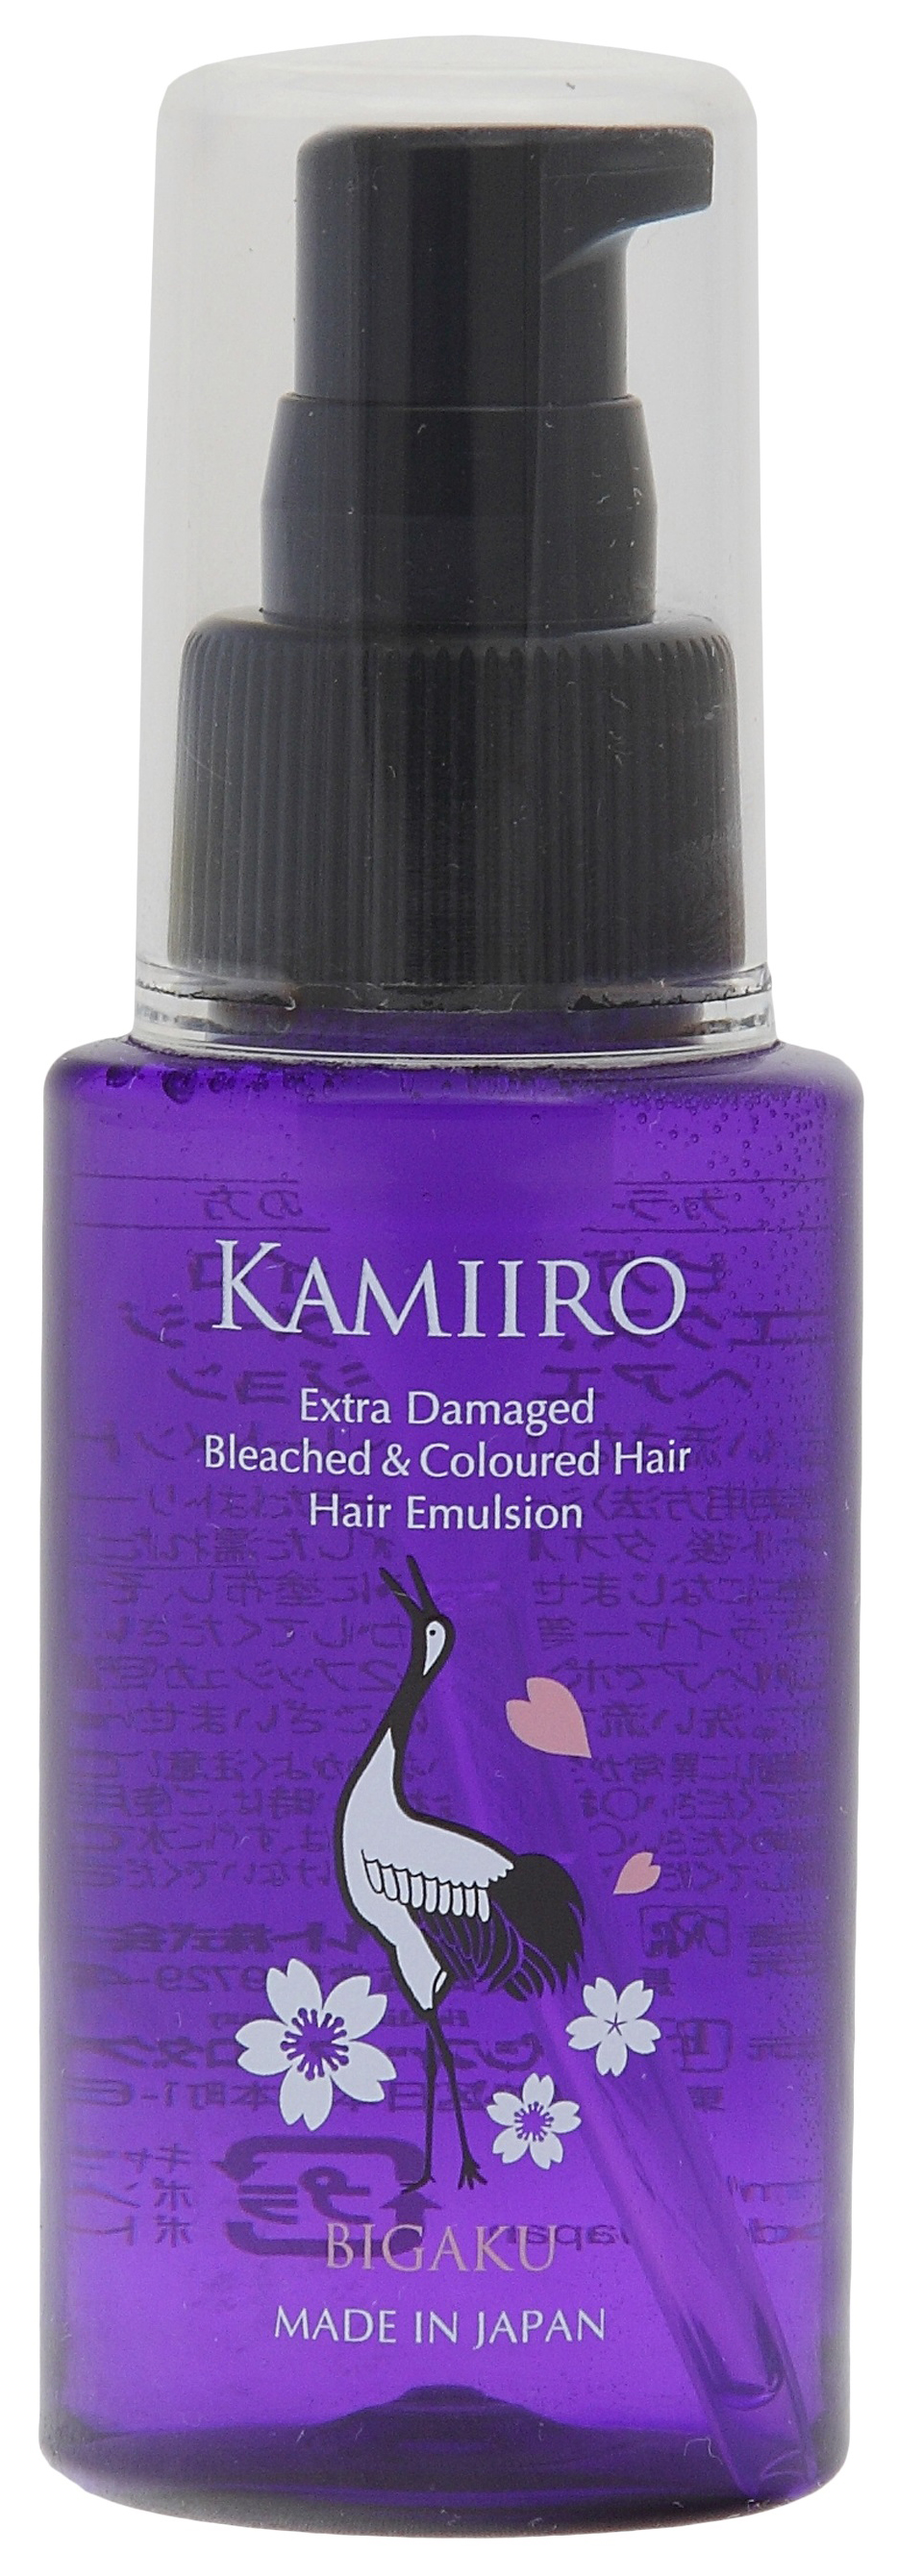 Эмульсия для волос Bigaku Extra Damaged Bleached & Coloured Hair Emulsion 60 мл интенсивная восстанавливающая эмульсия для поврежденных волос sp repair emulsion